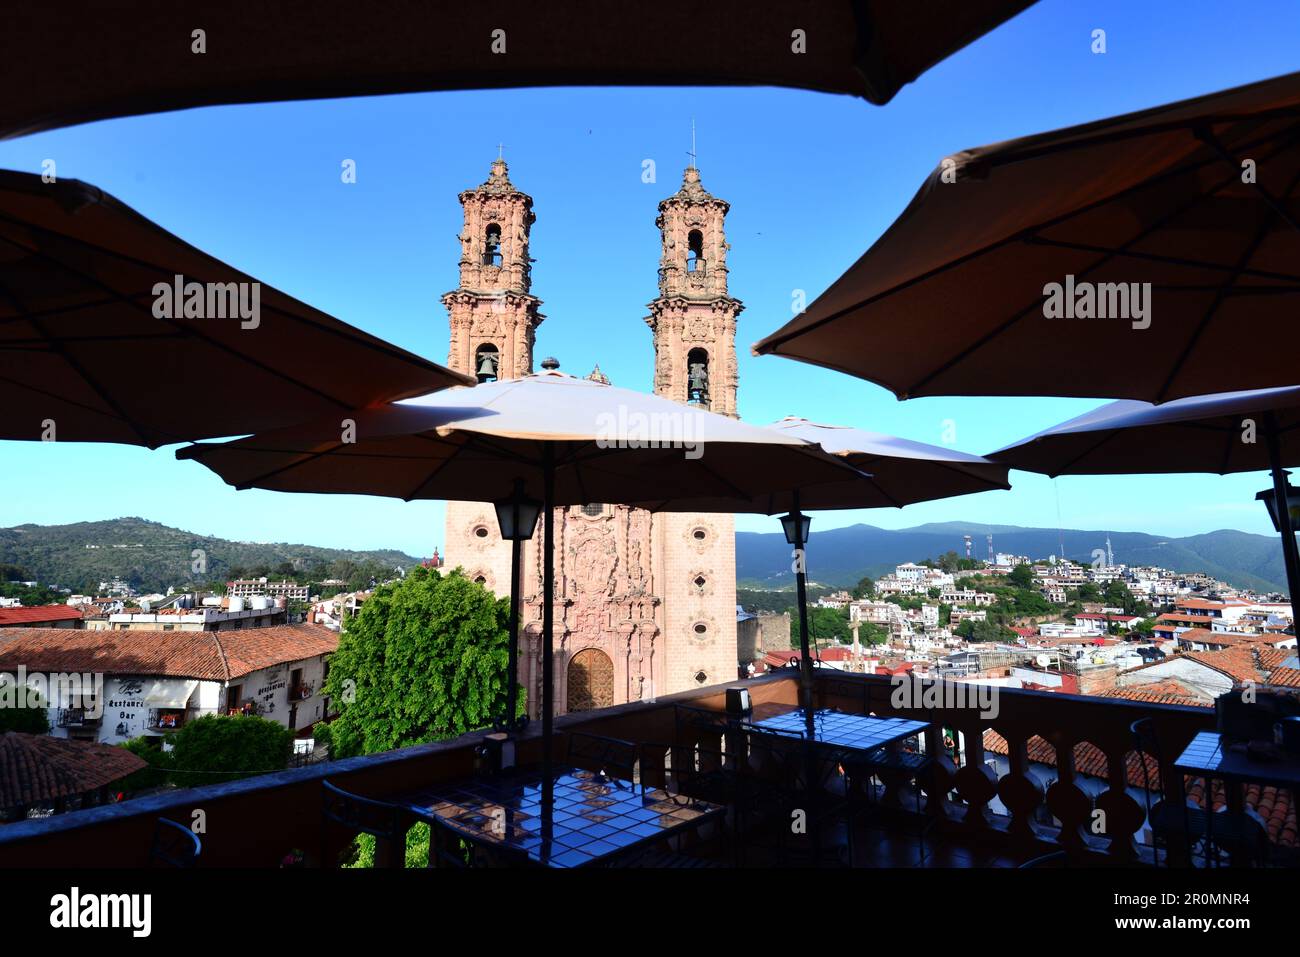 Blick vom Dach eines Restaurants mit Sonnenschirmen auf die Igleisia de Santa Prisca in der Altstadt von Taxco, Mexiko Stockfoto